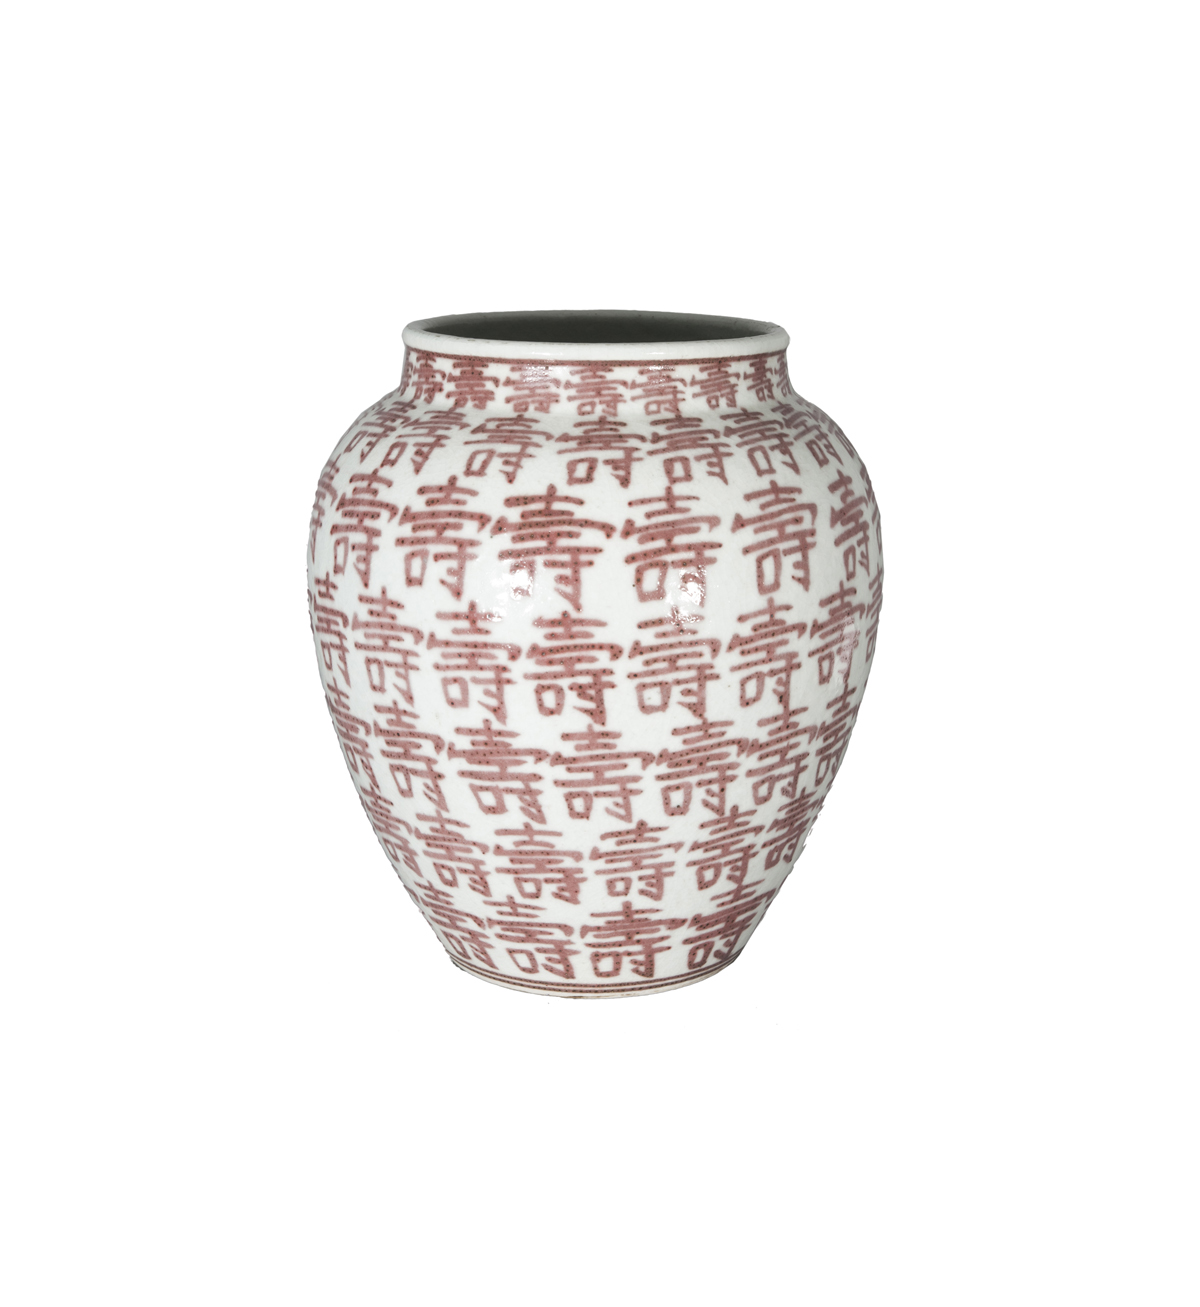 A shoulder pot with auspicious characters 'Shou'